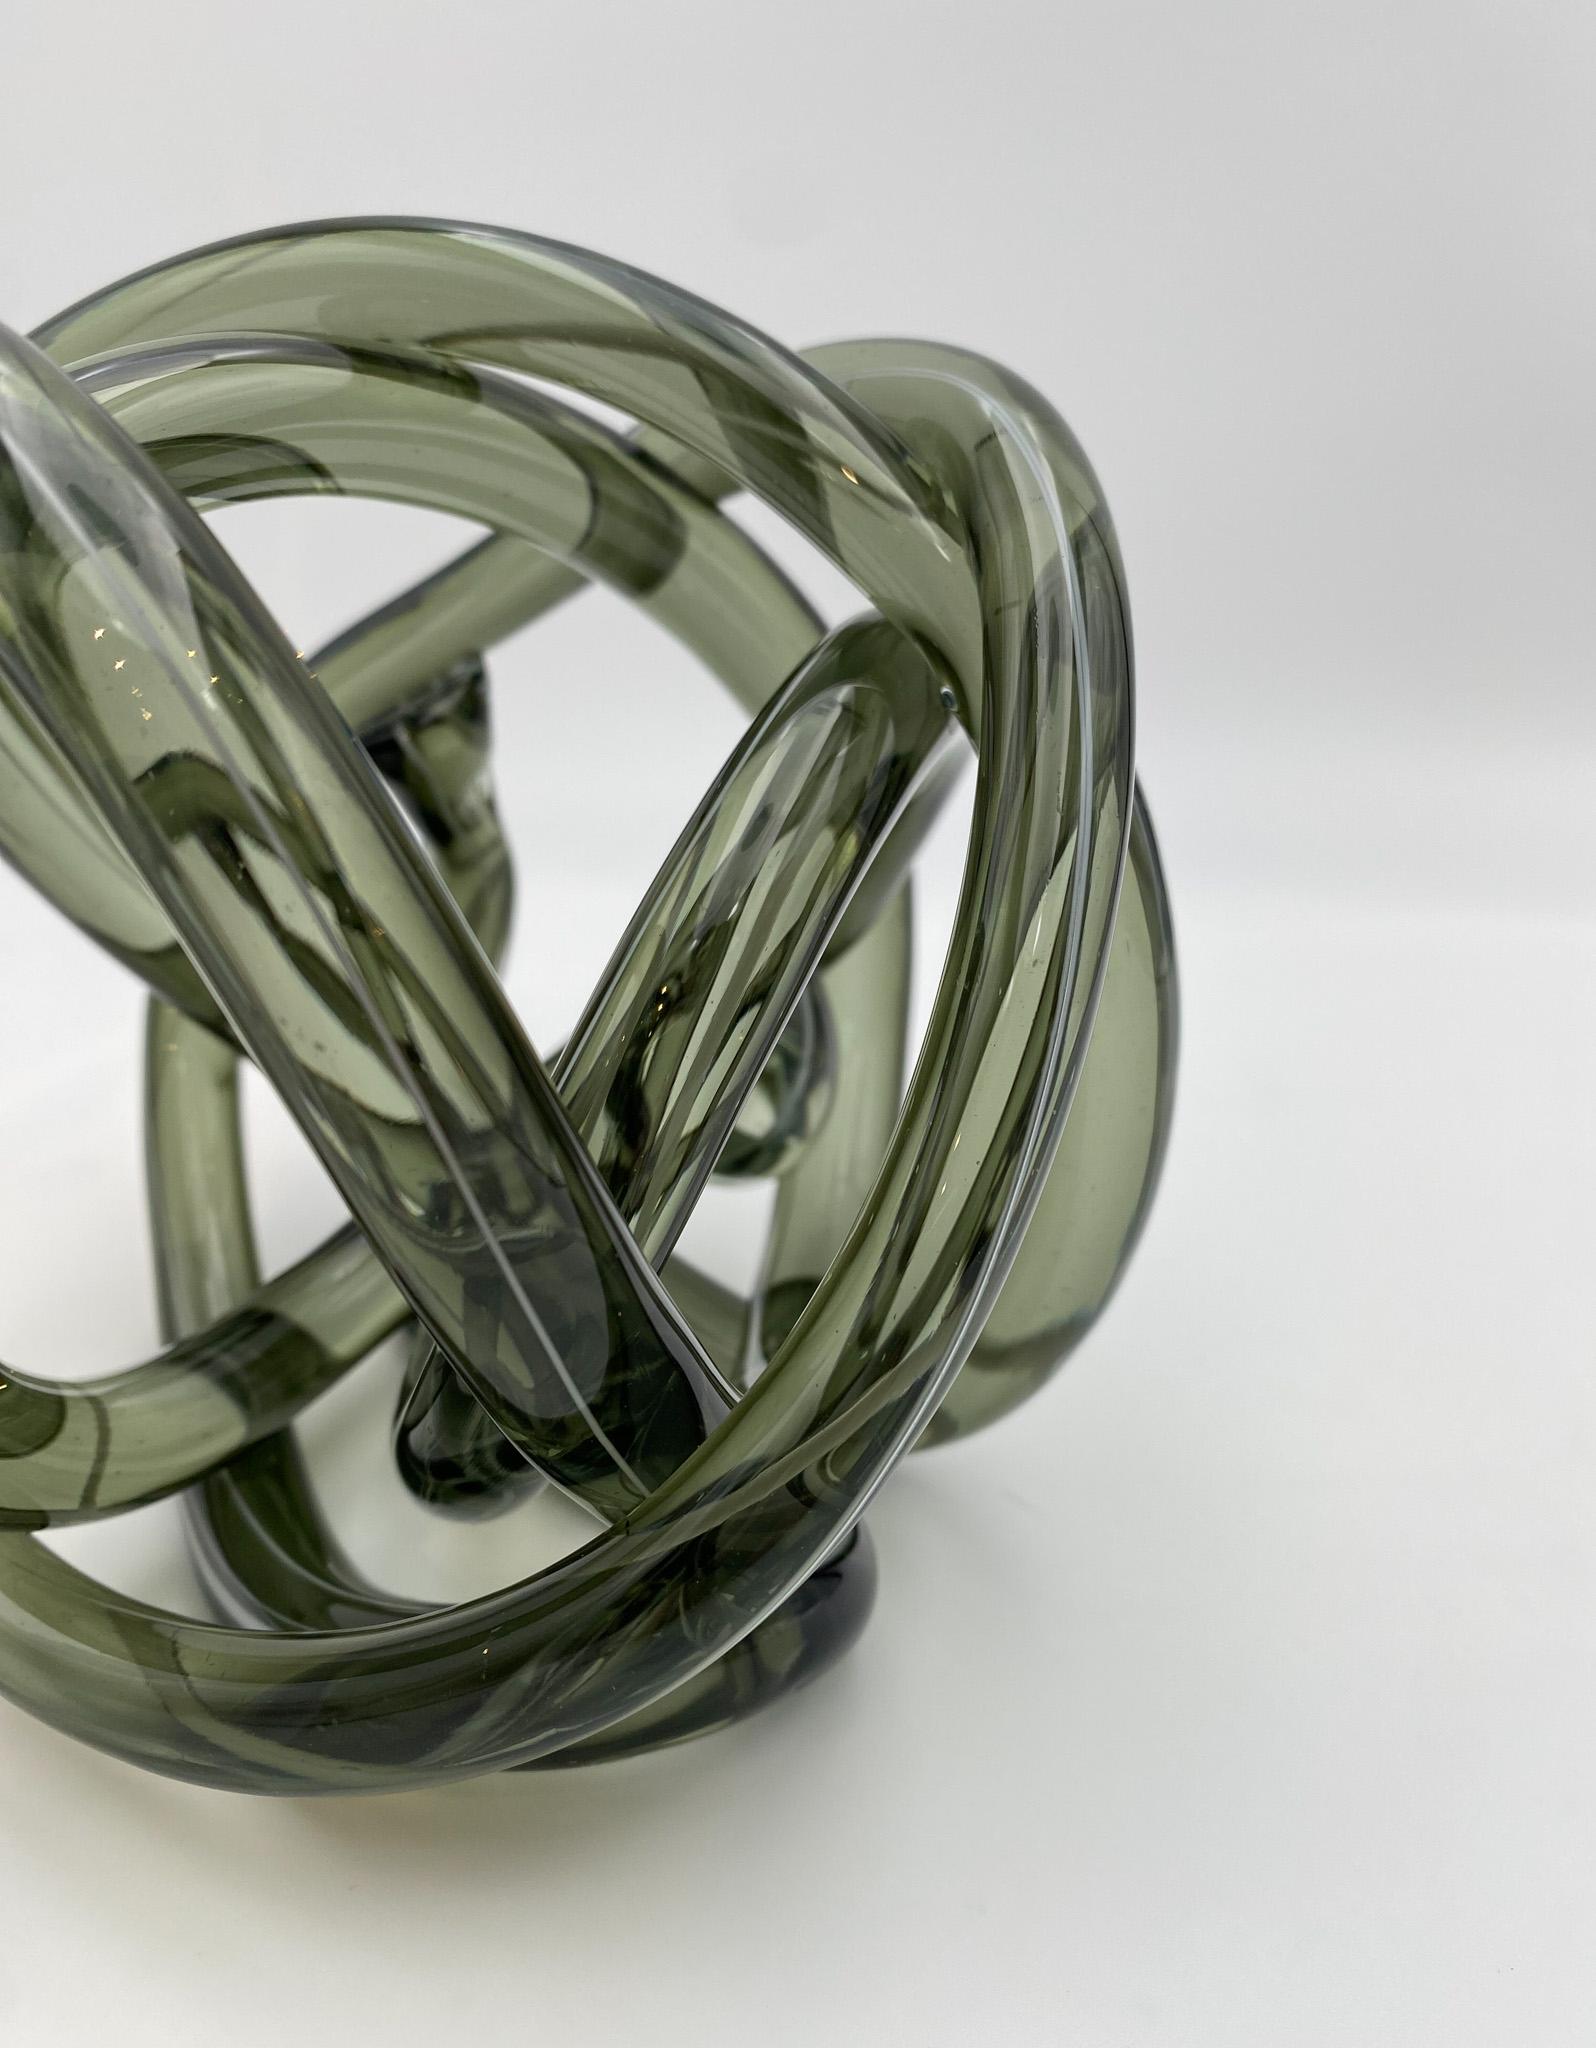 Abstract Art Glass Knot Sculpture  2